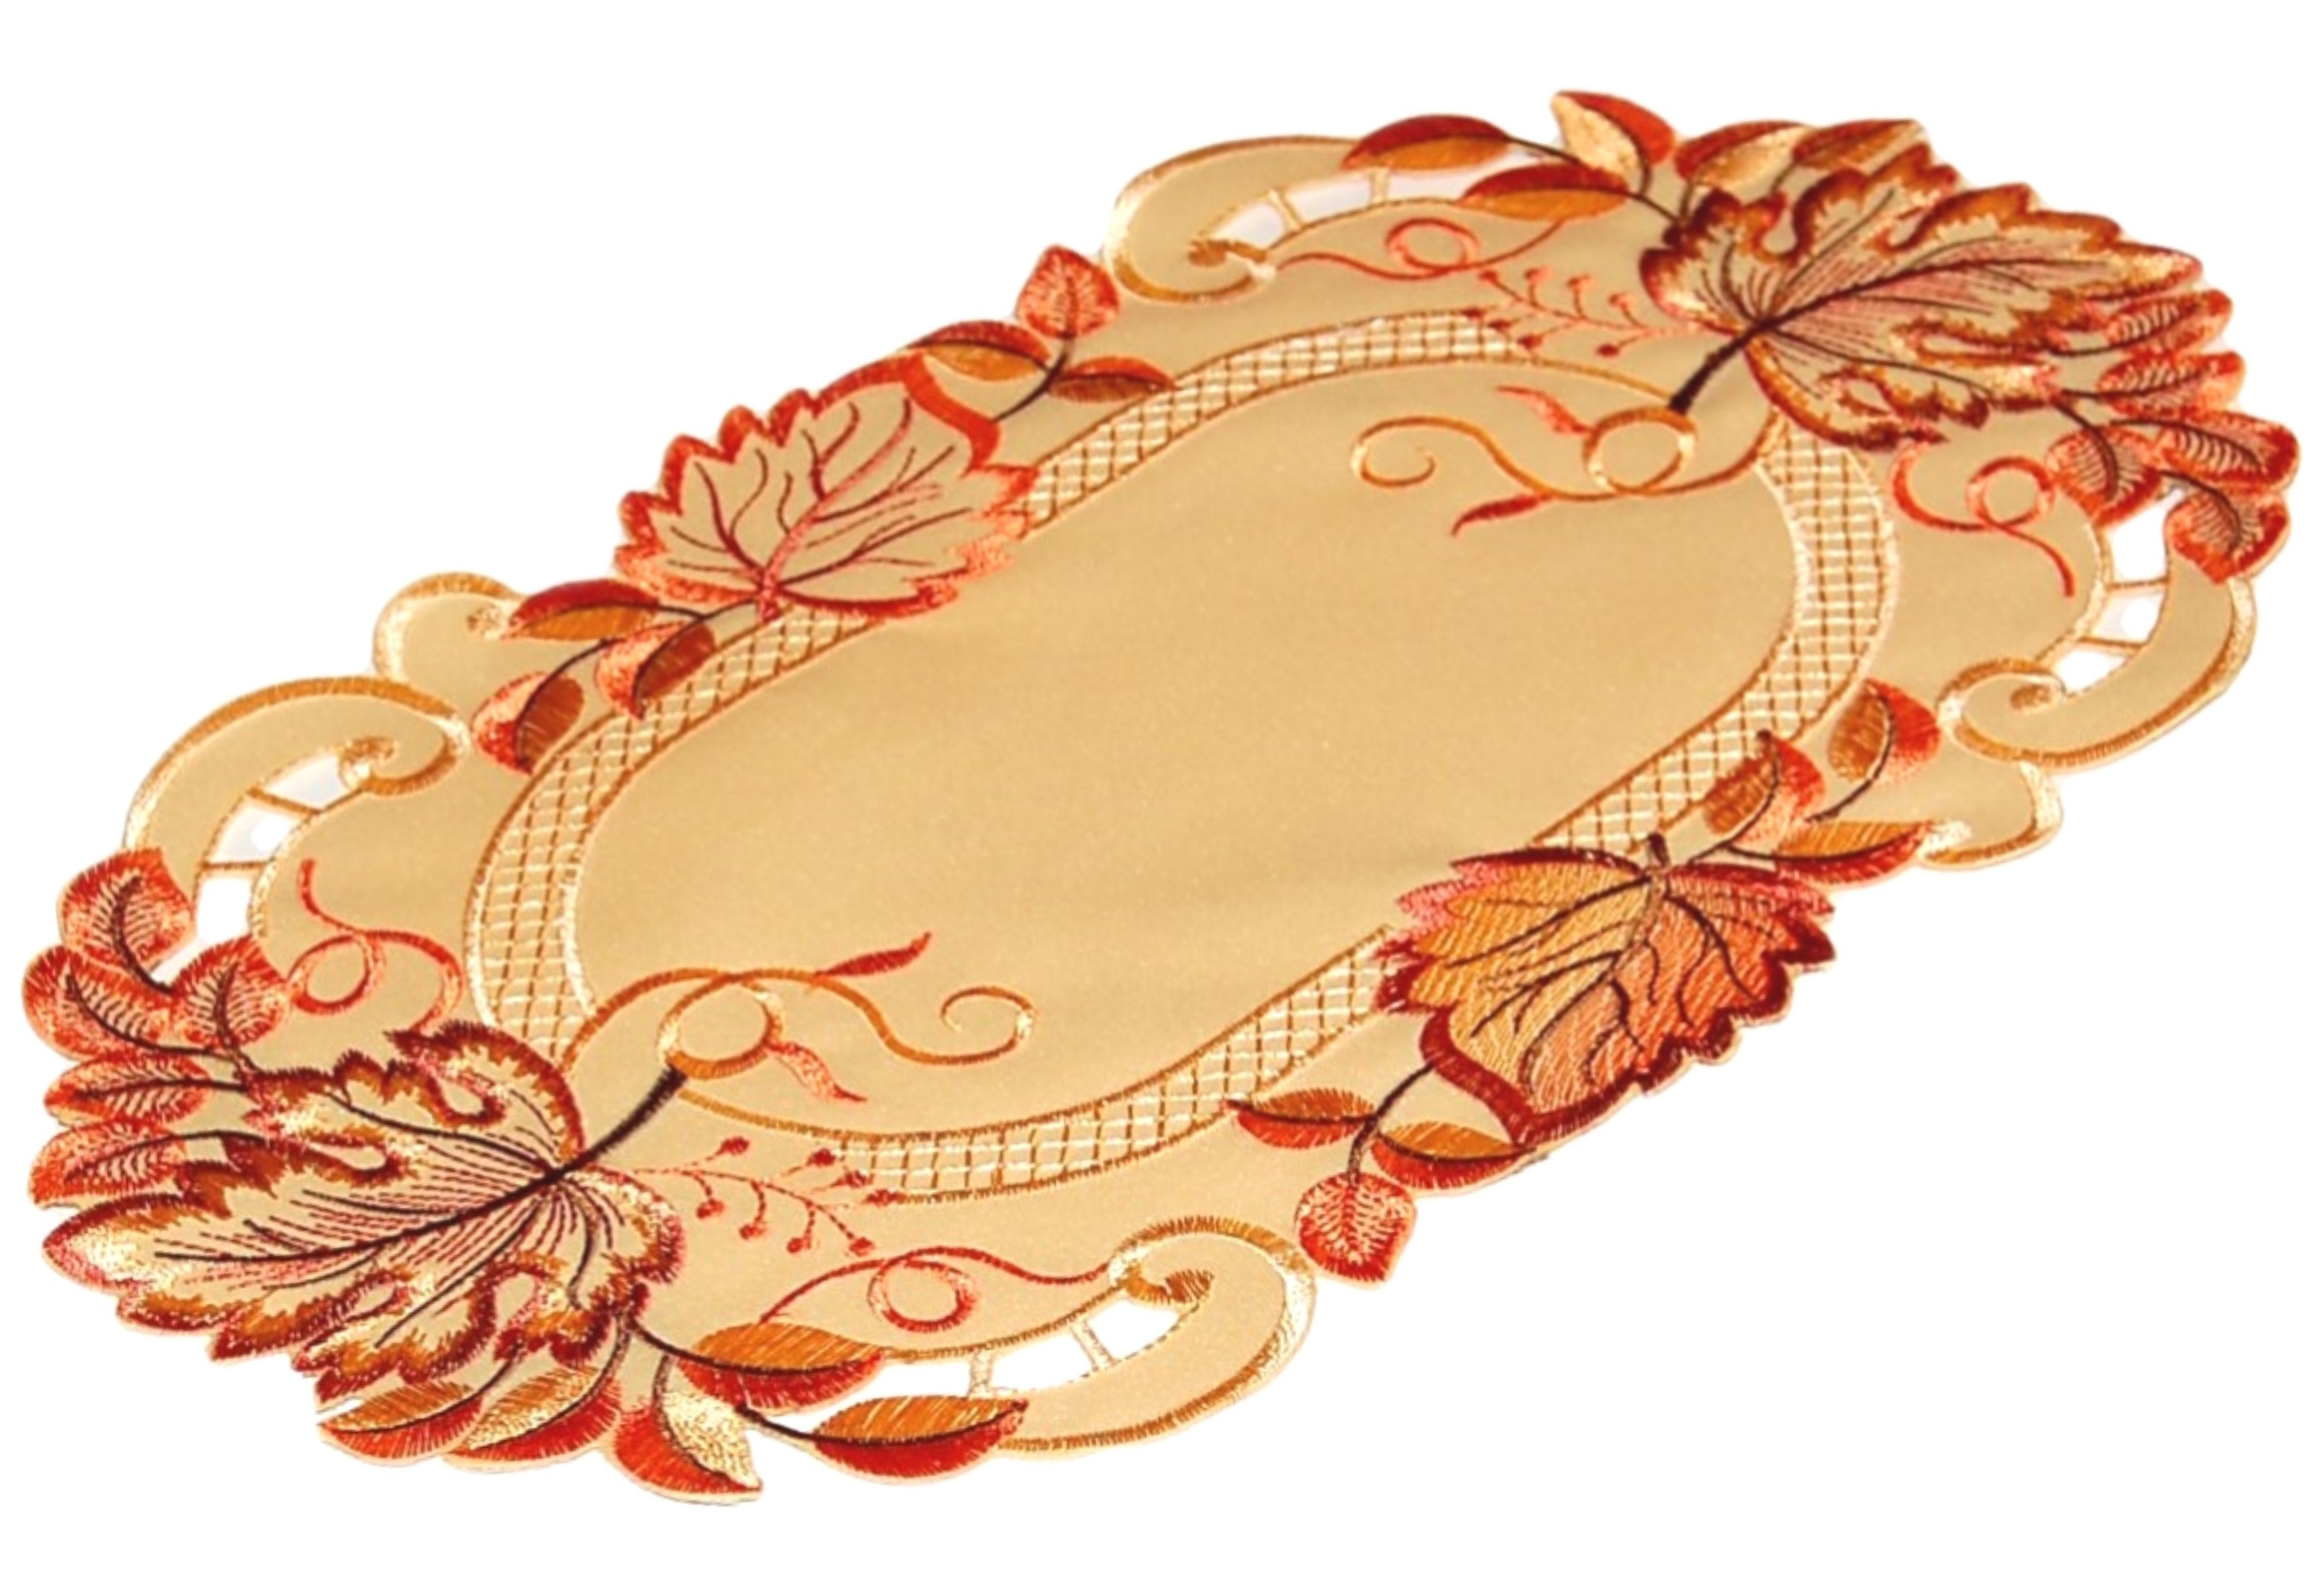 HERBST Tischdecke Tischläufer Mitteldecke Deckchen Decke Läufer Stickerei  Orange | eBay